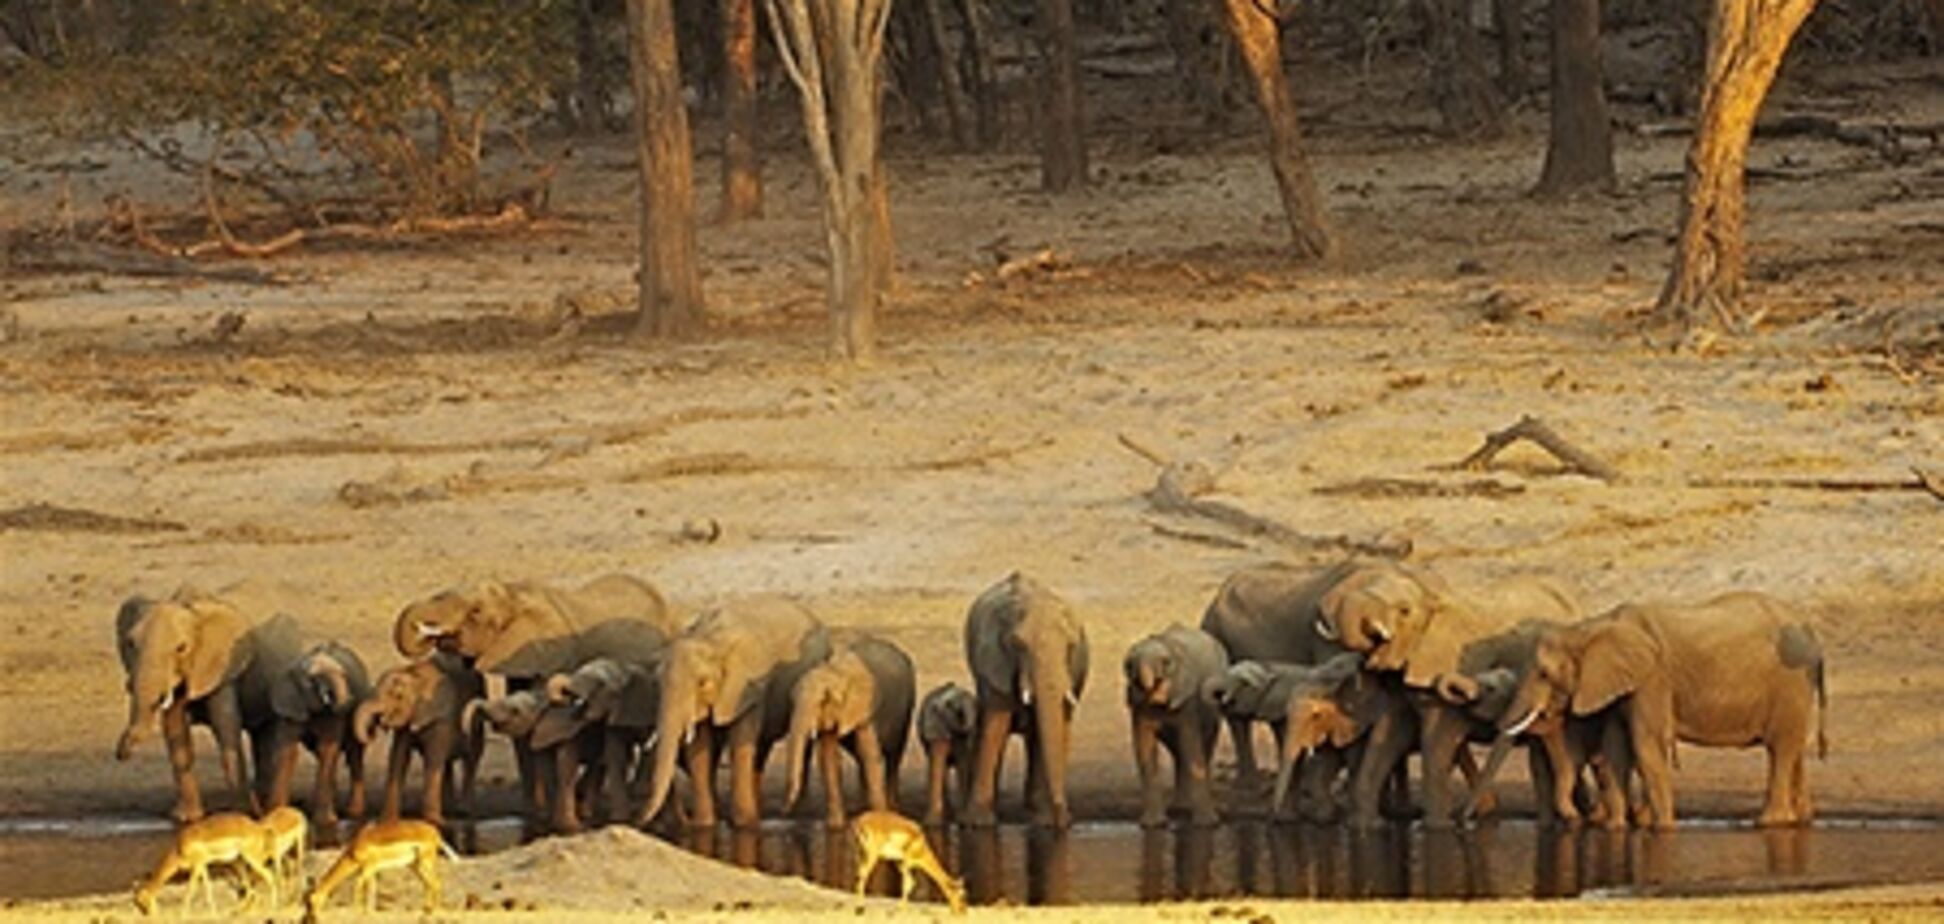 Майже двісті слонів загинули в національному парку Зімбабве через посуху